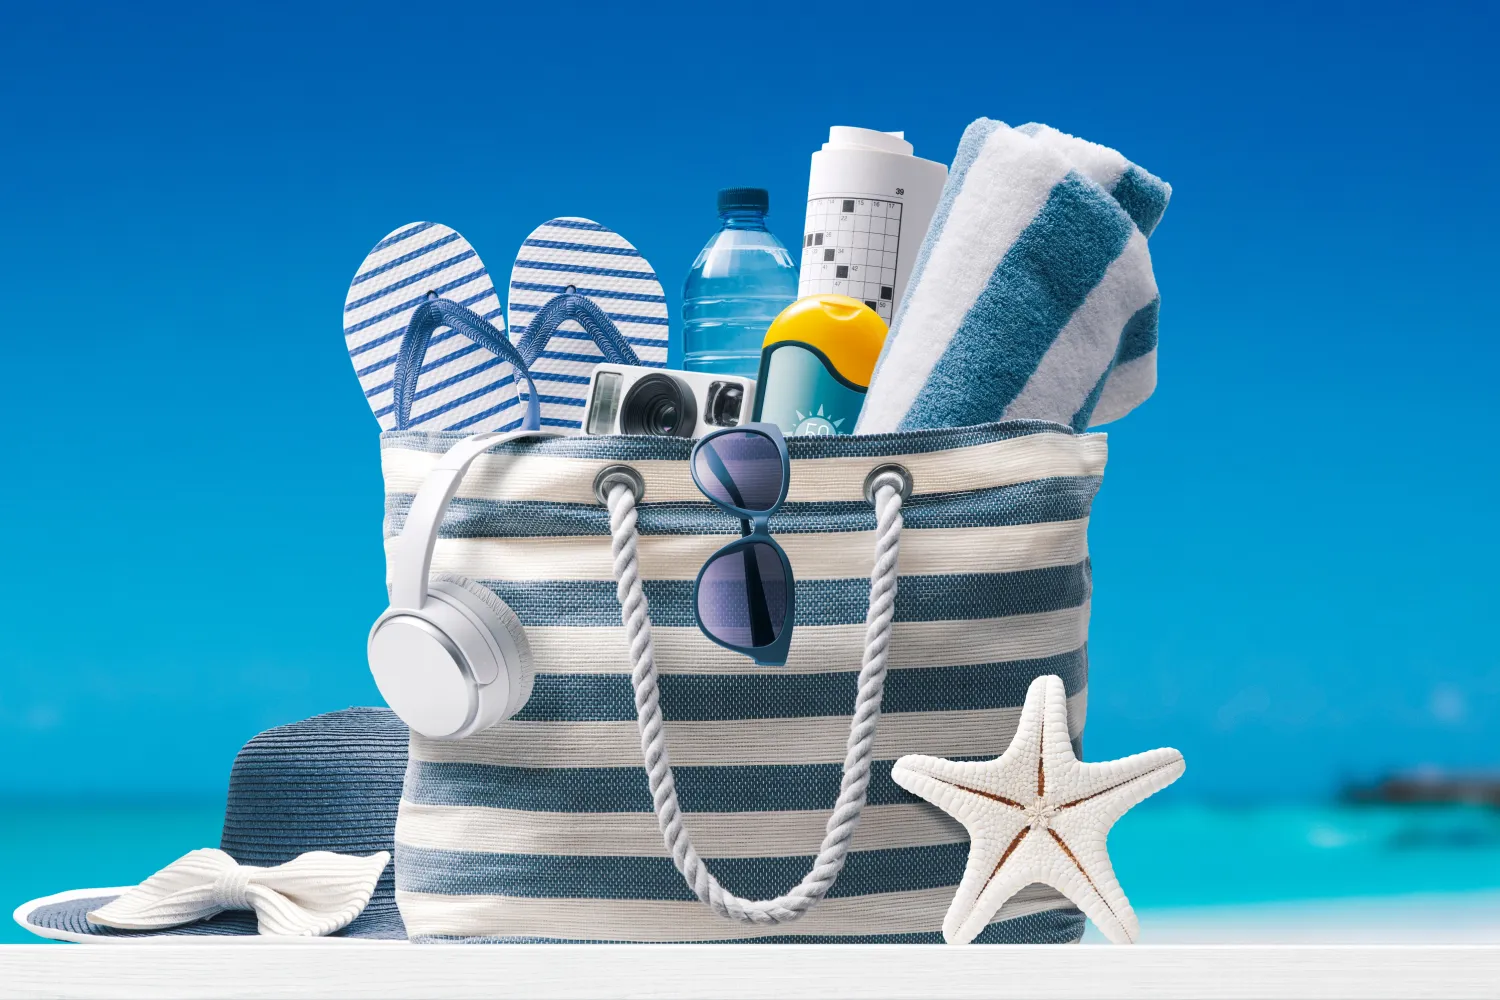 Γαλανόλευκη τσάντα με αξεσουάρ για παραλία